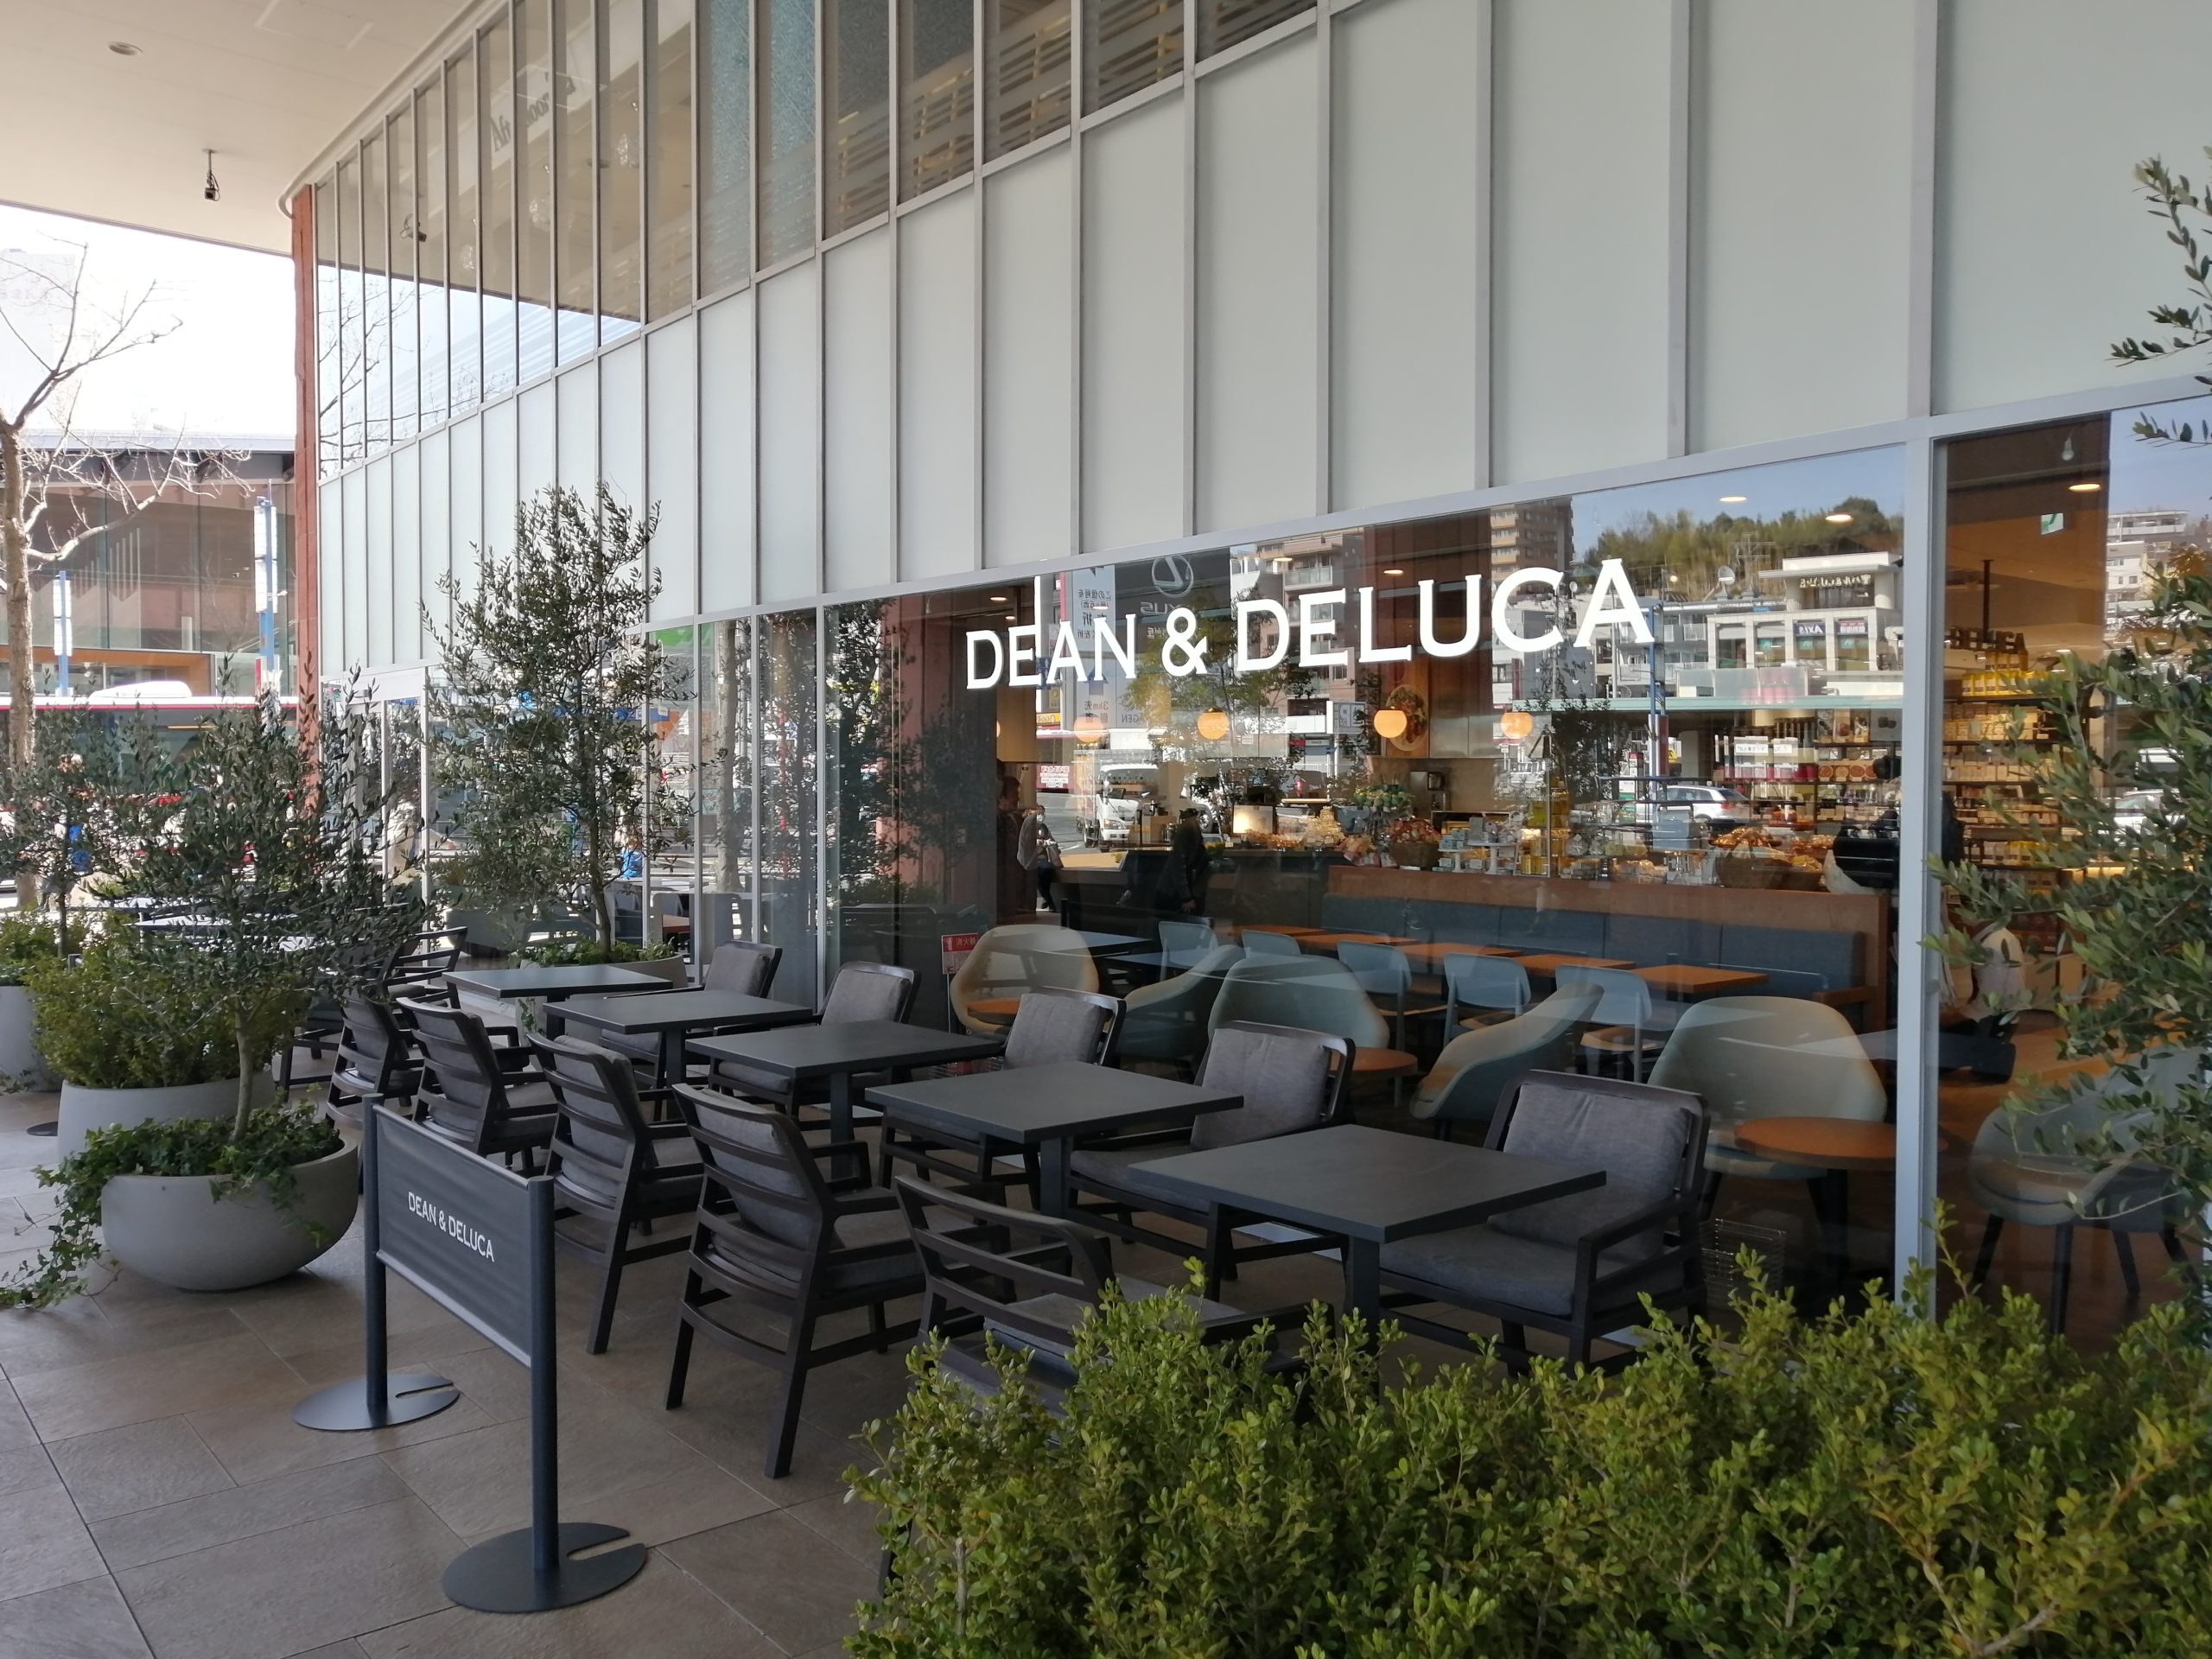 千種区開店 3 18 Dean Deluca Cafe ディーンアンドデルーカカフェ が星ヶ丘三越に開店 ちくさん